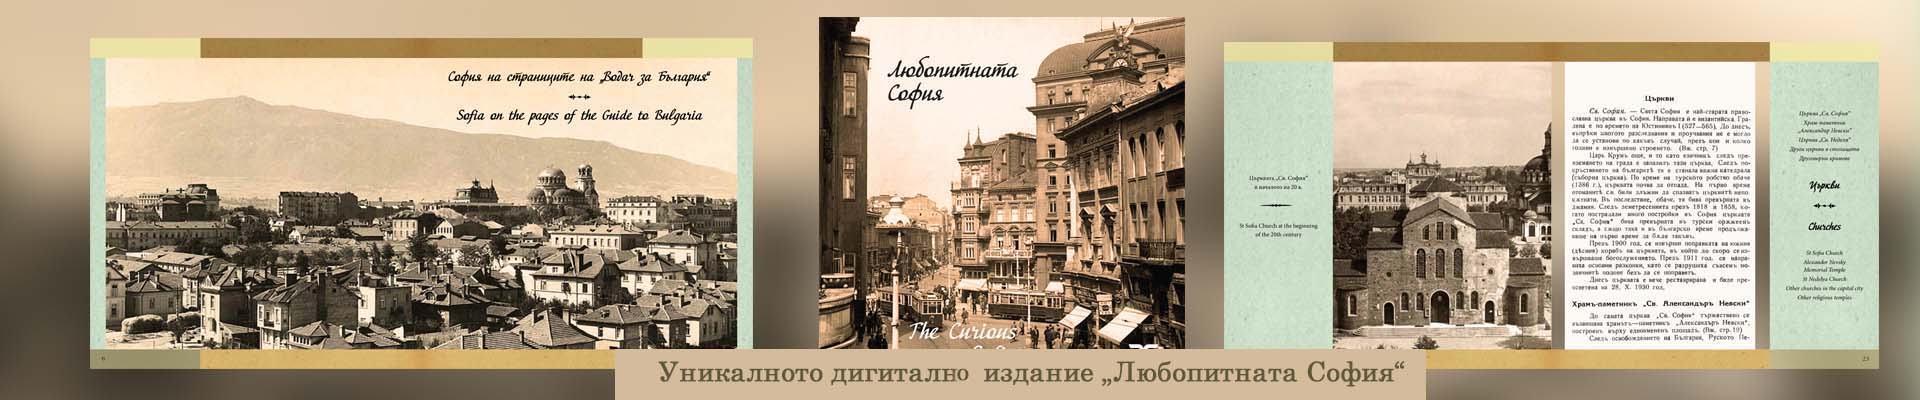 Новото издание „Любопитната София“ от тематичната поредица на Столична библиотека за историята на столицата